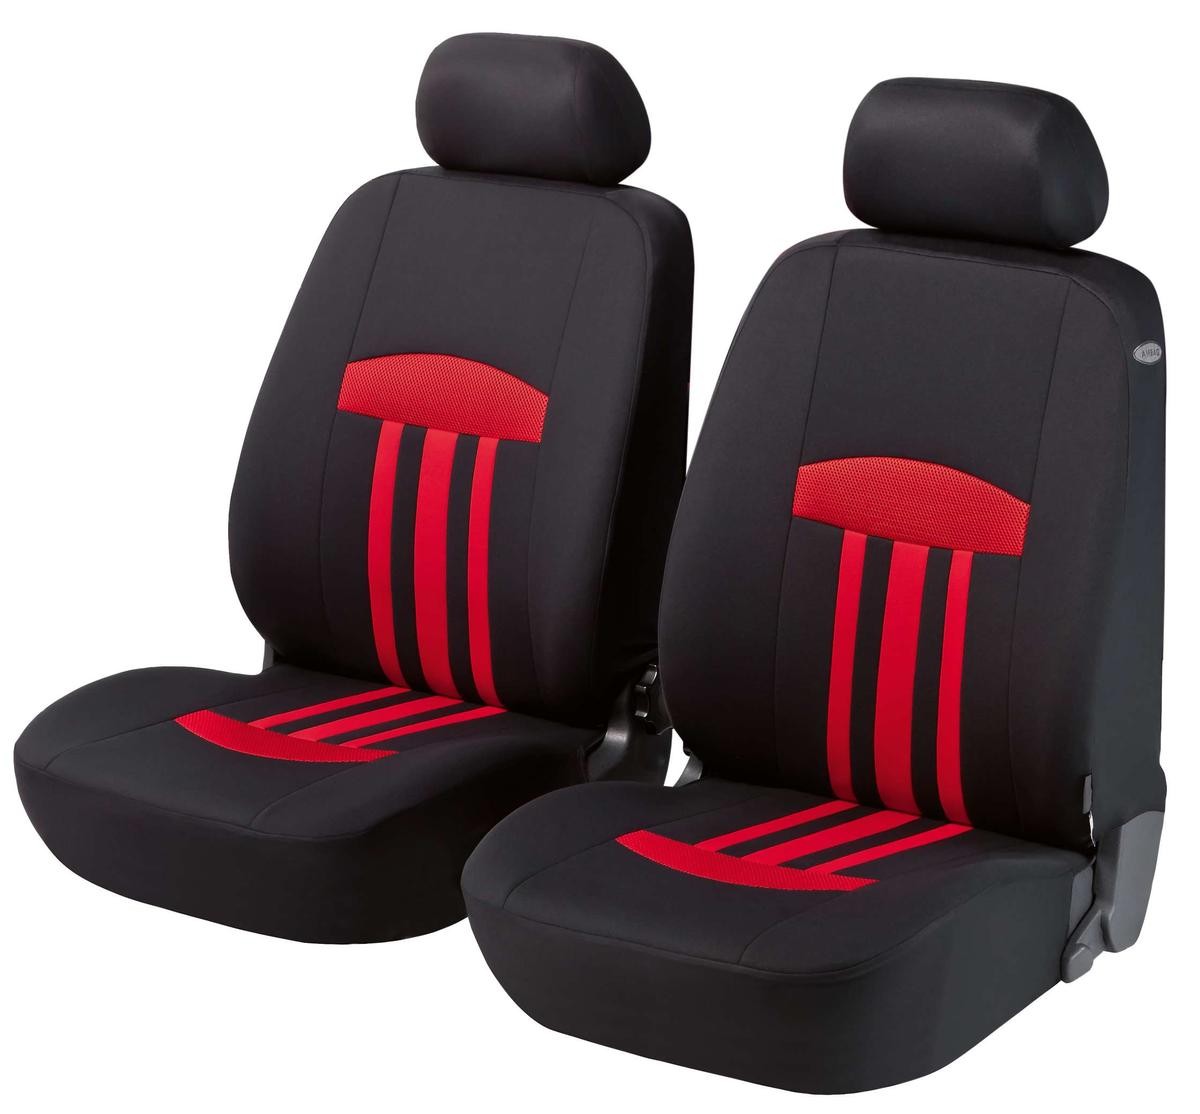  AKSHVA Funda de asiento de coche de 5 asientos, para Vauxhall  Corsa D, asiento delantero y trasero de cuero para todo tipo de clima,  transpirable, resistente al desgaste, impermeable (color 